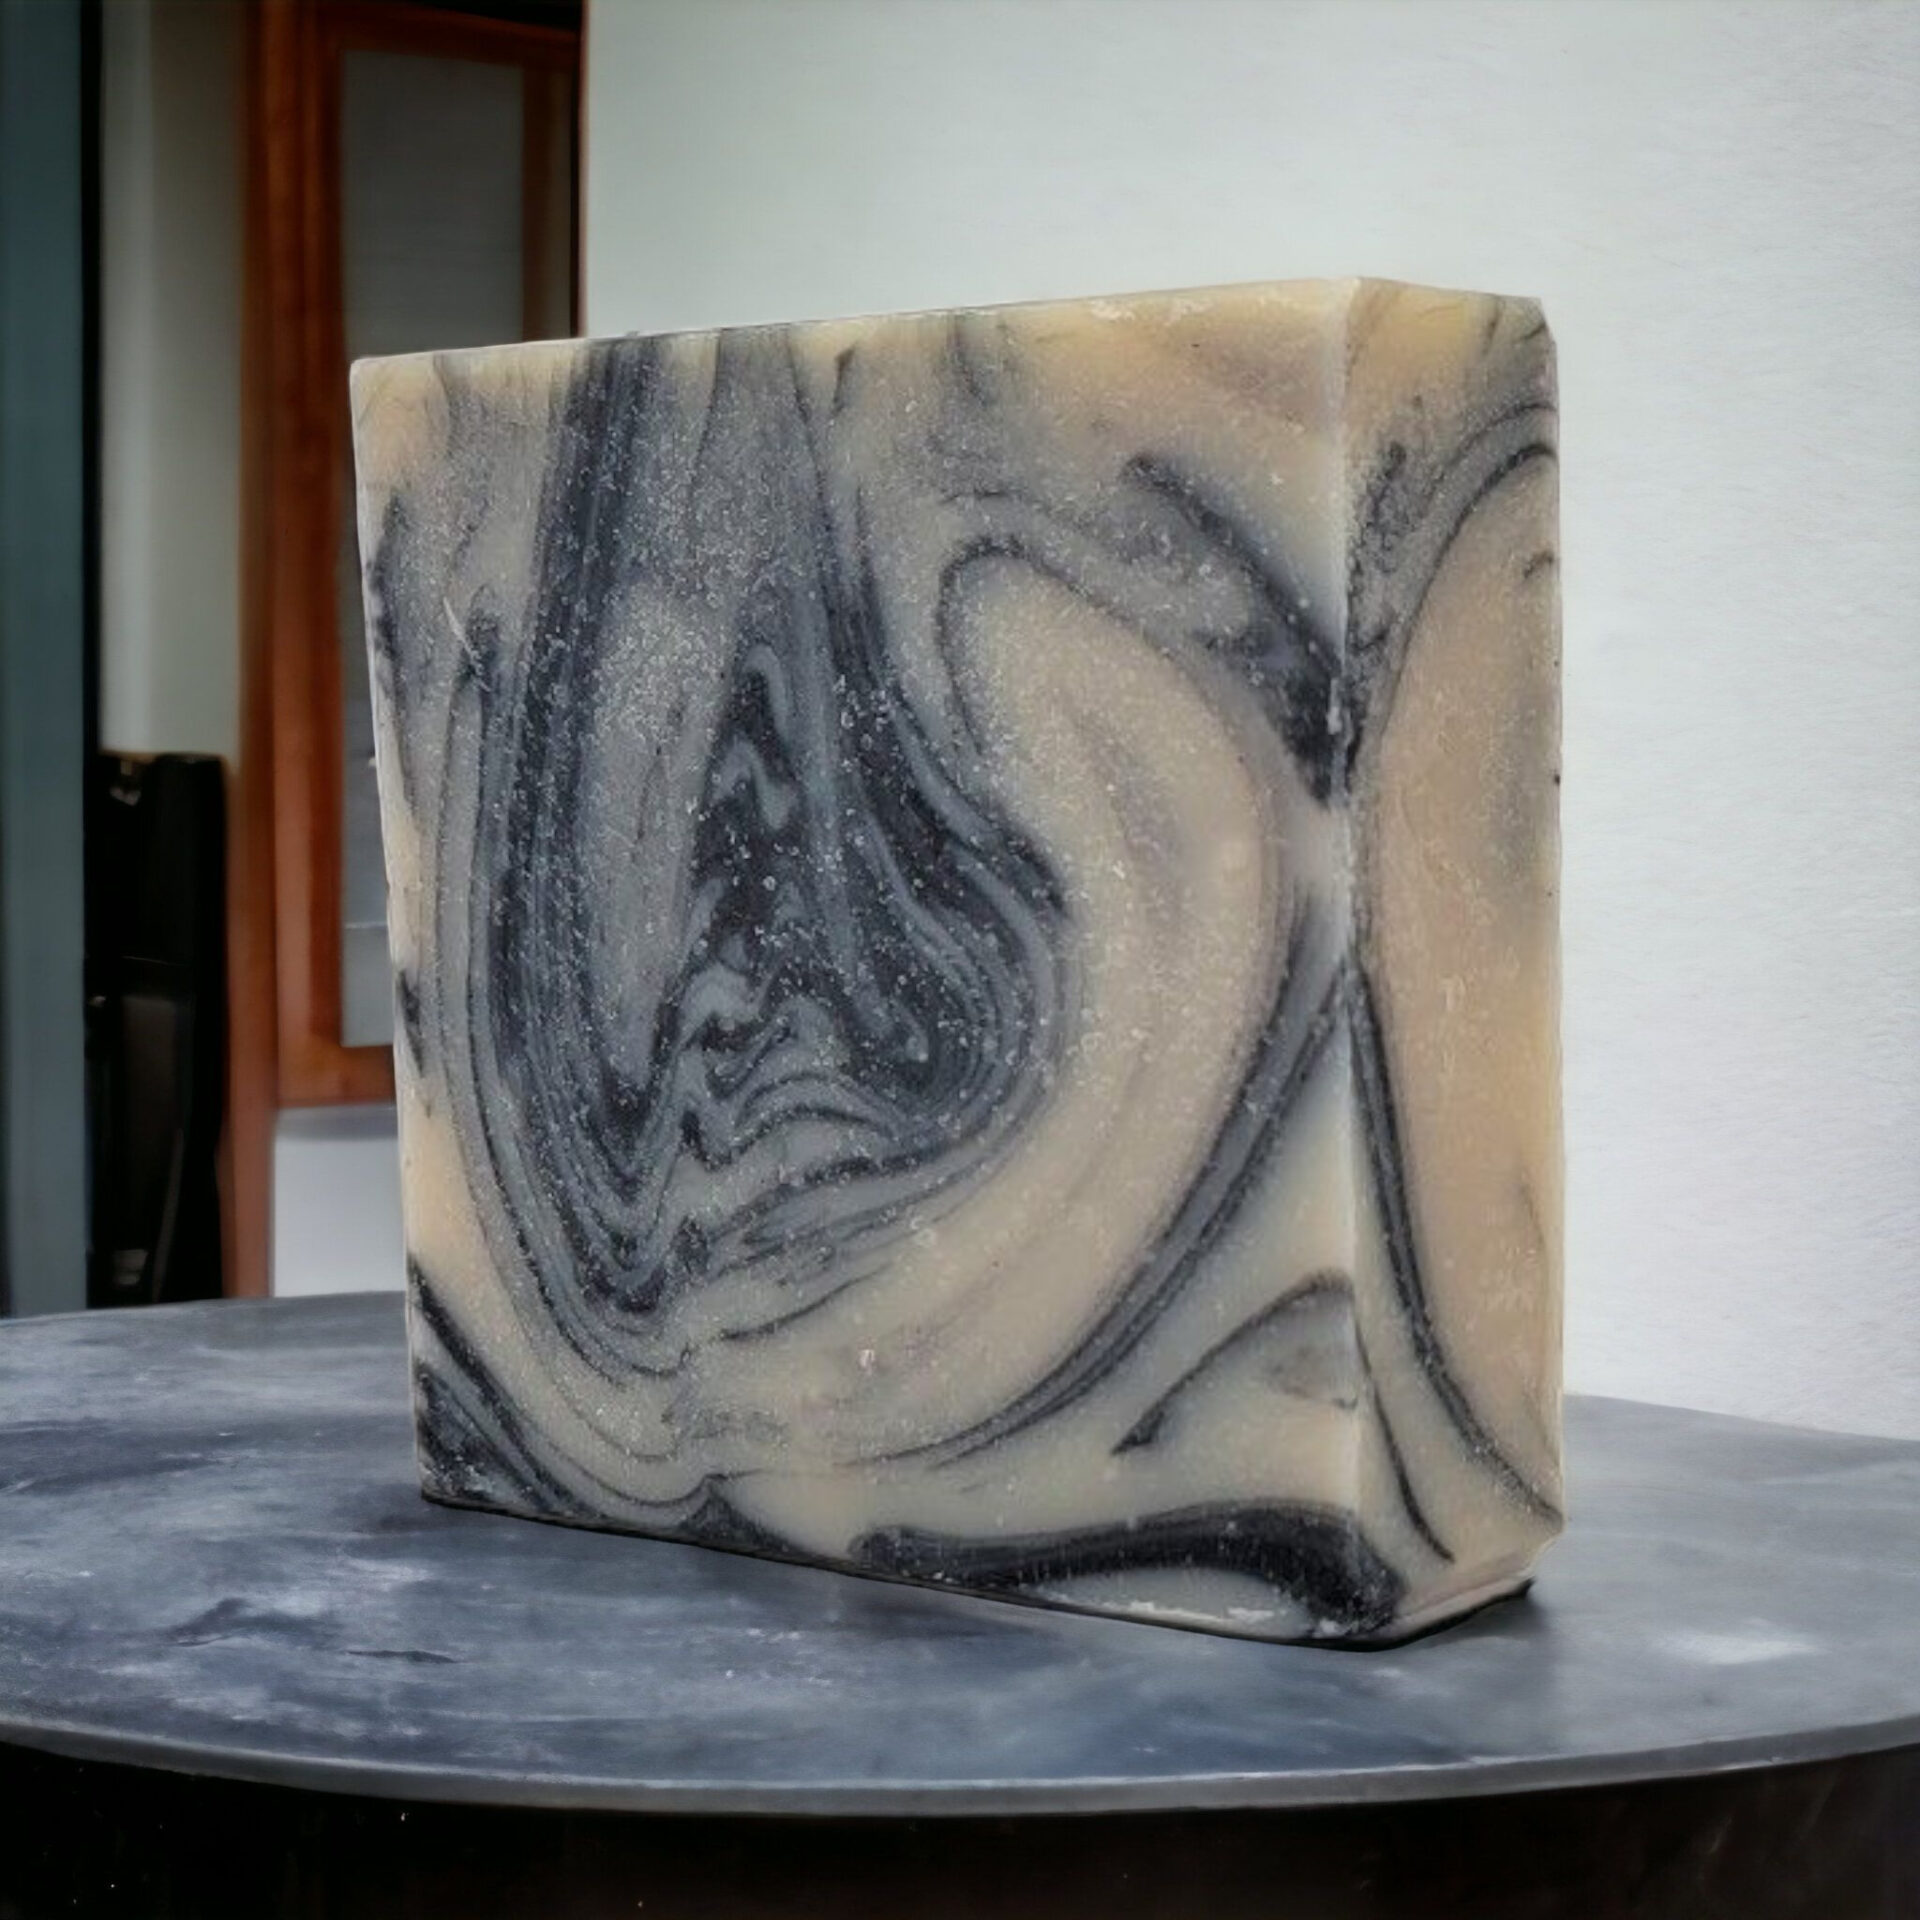 Black Forest Handmade Soap